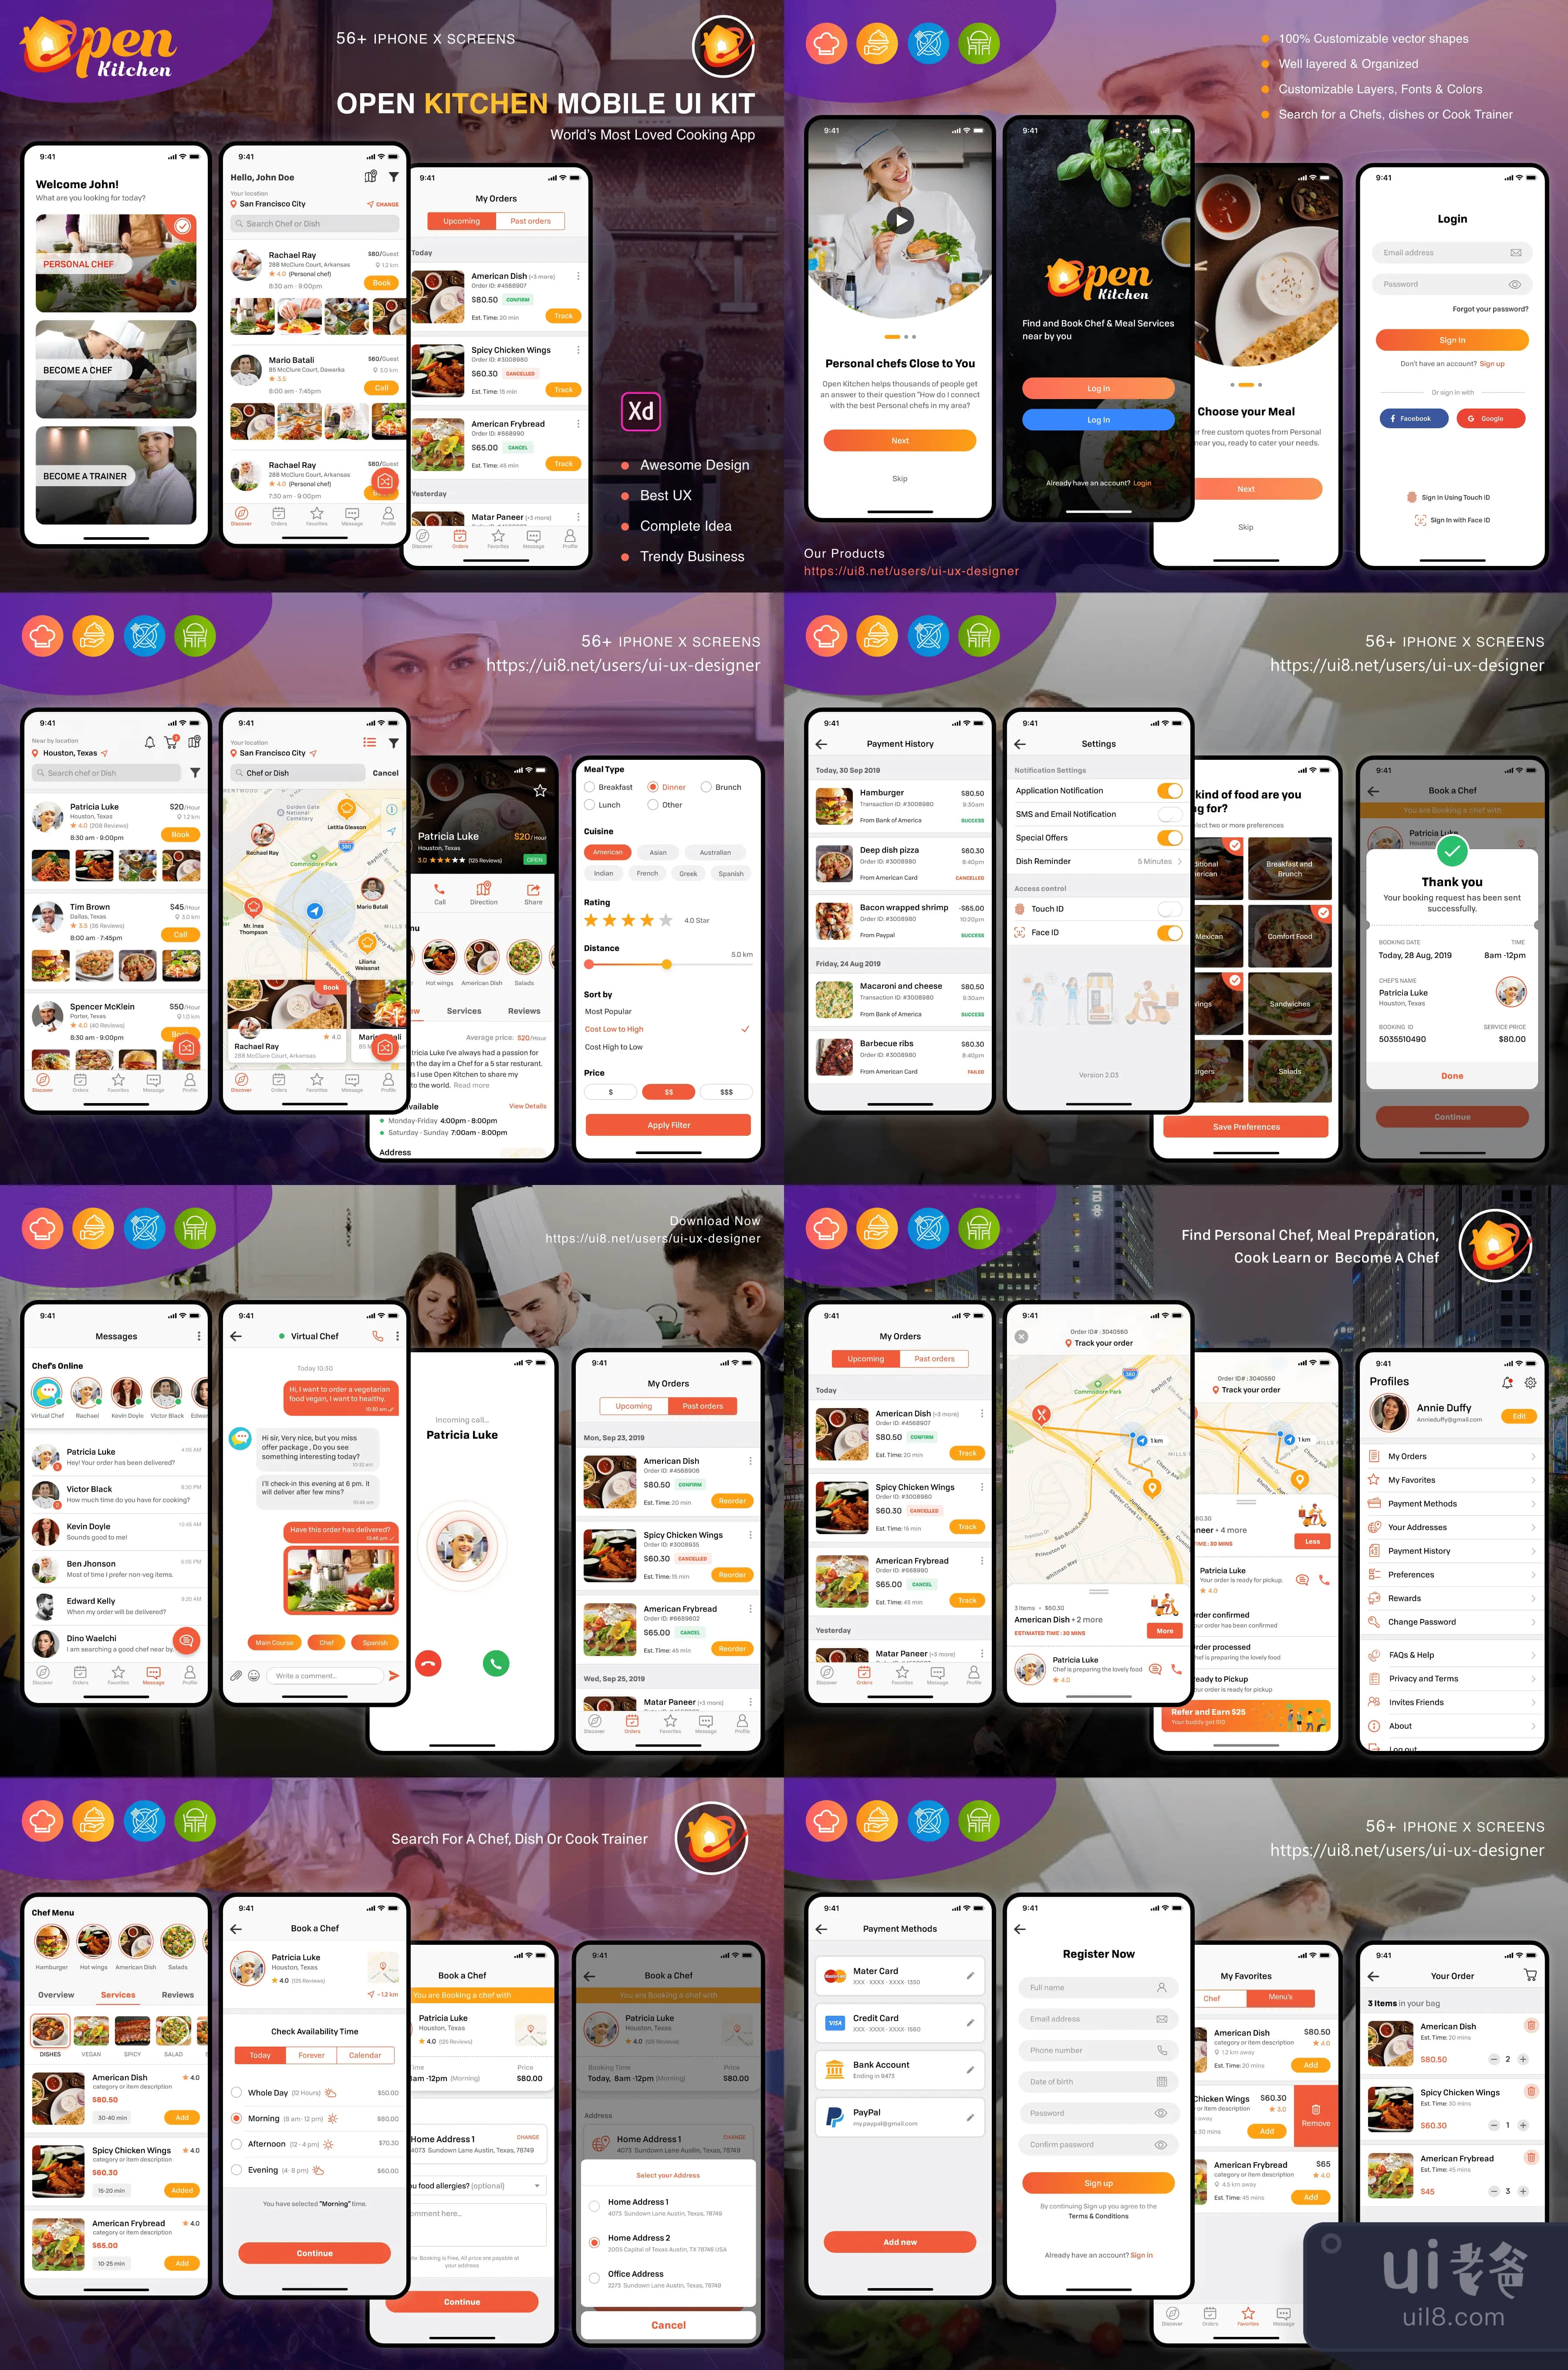 开放式厨房移动应用程序 (Open Kitchen Mobile App)插图